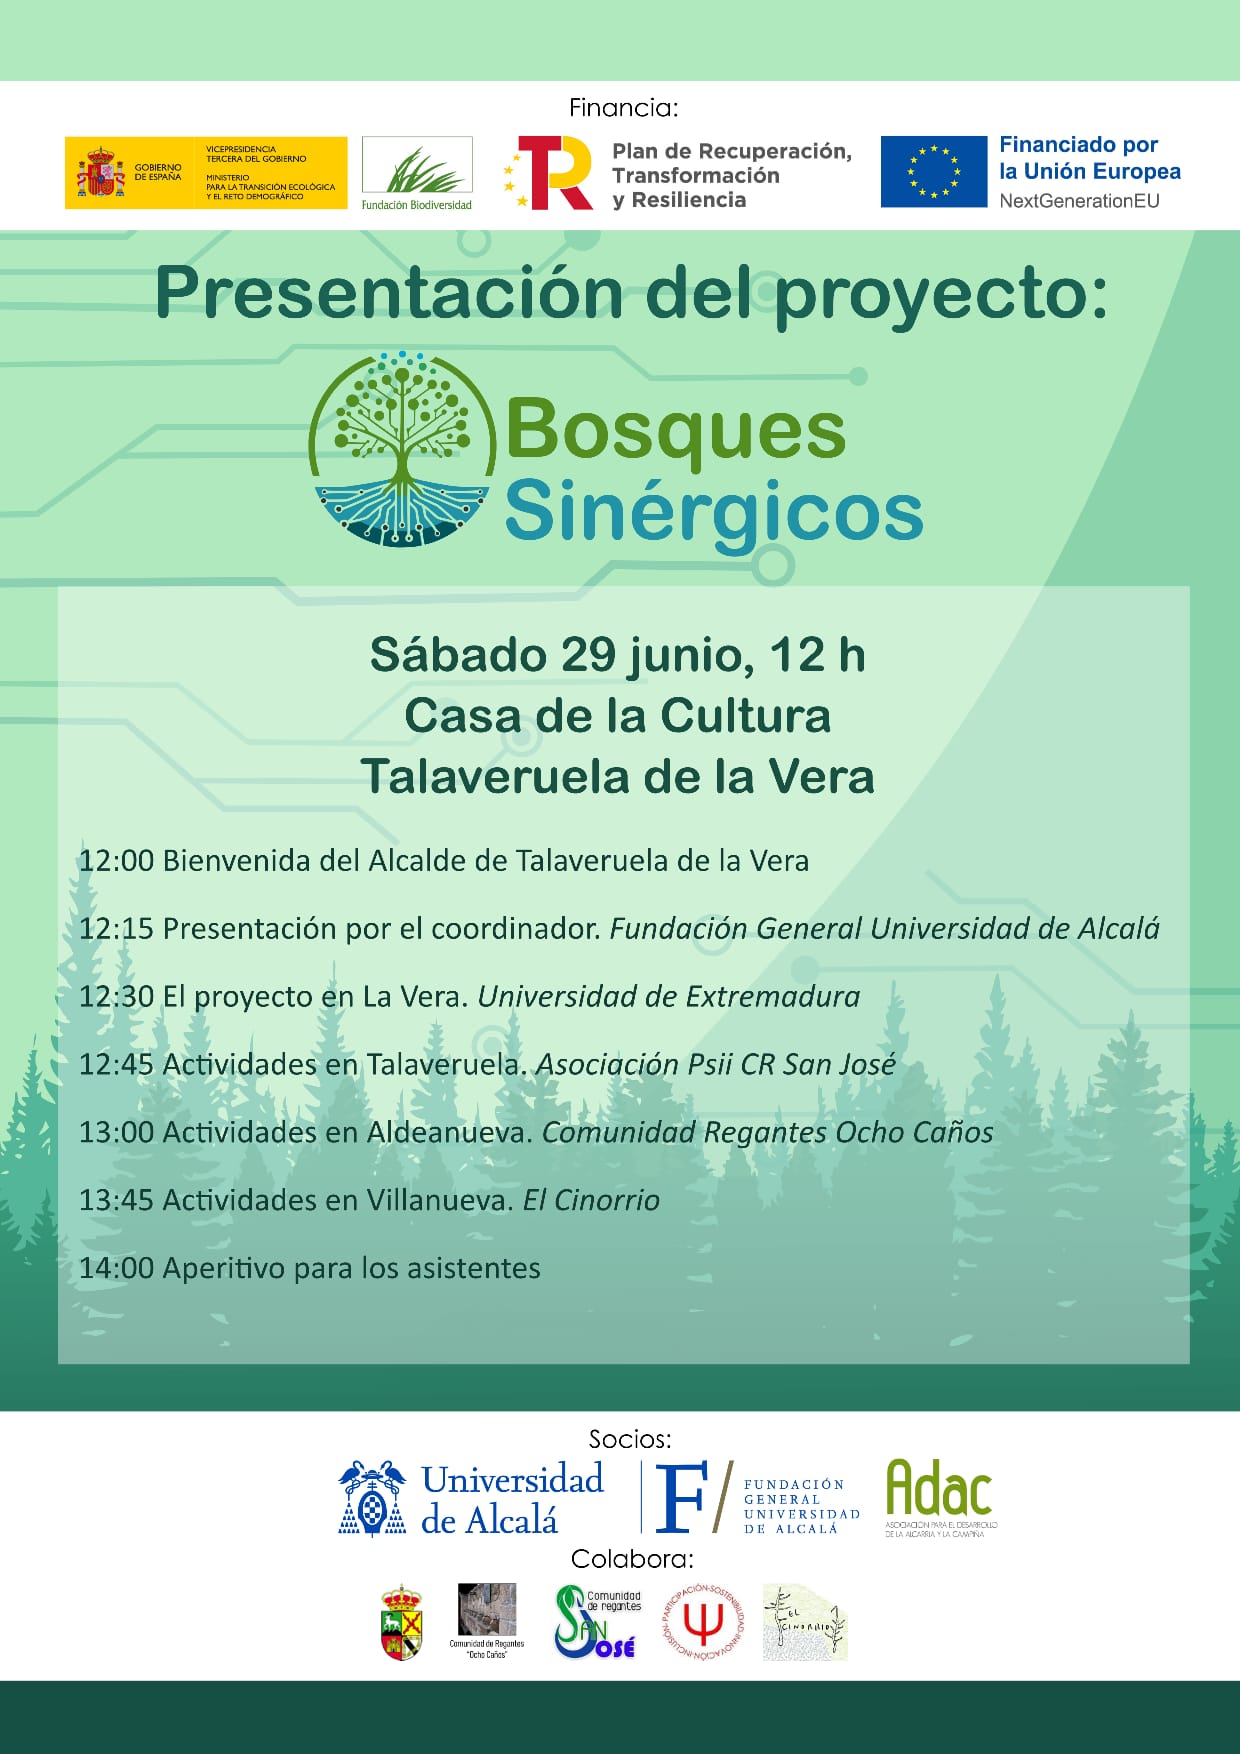 Presentación del proyecto "Bosques Sinérgicos" en Talaveruela, Cáceres, el próximo 29 de Junio en la Casa de la Cultura